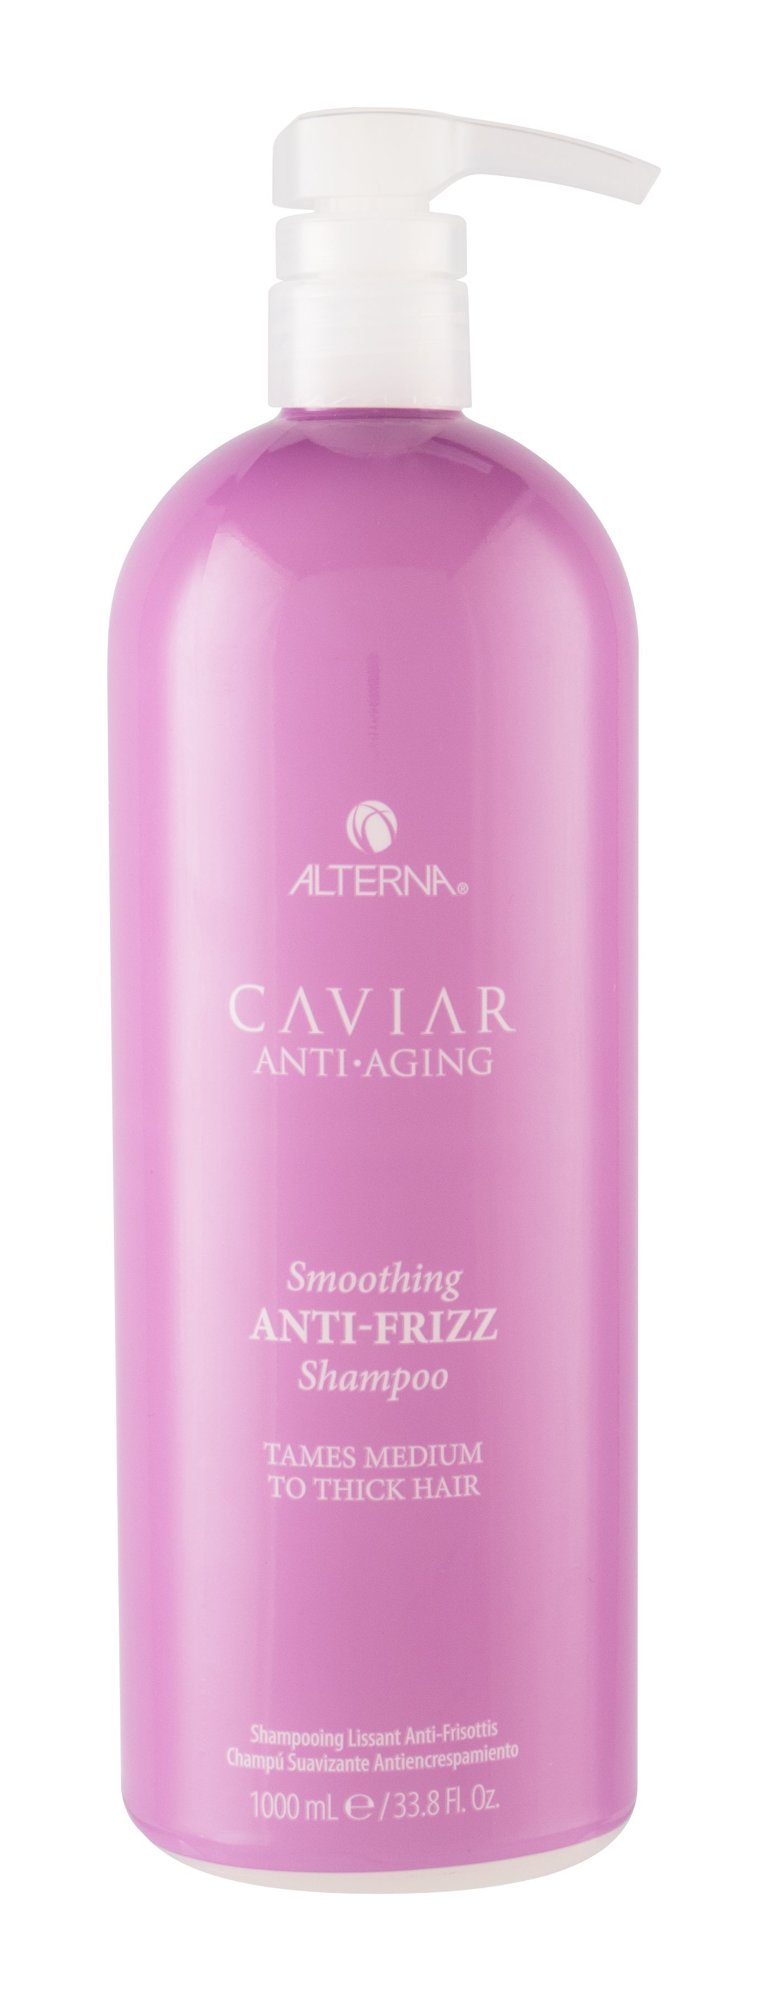 Alterna Caviar Anti-Aging Smoothing Anti-Frizz 1000ml šampūnas